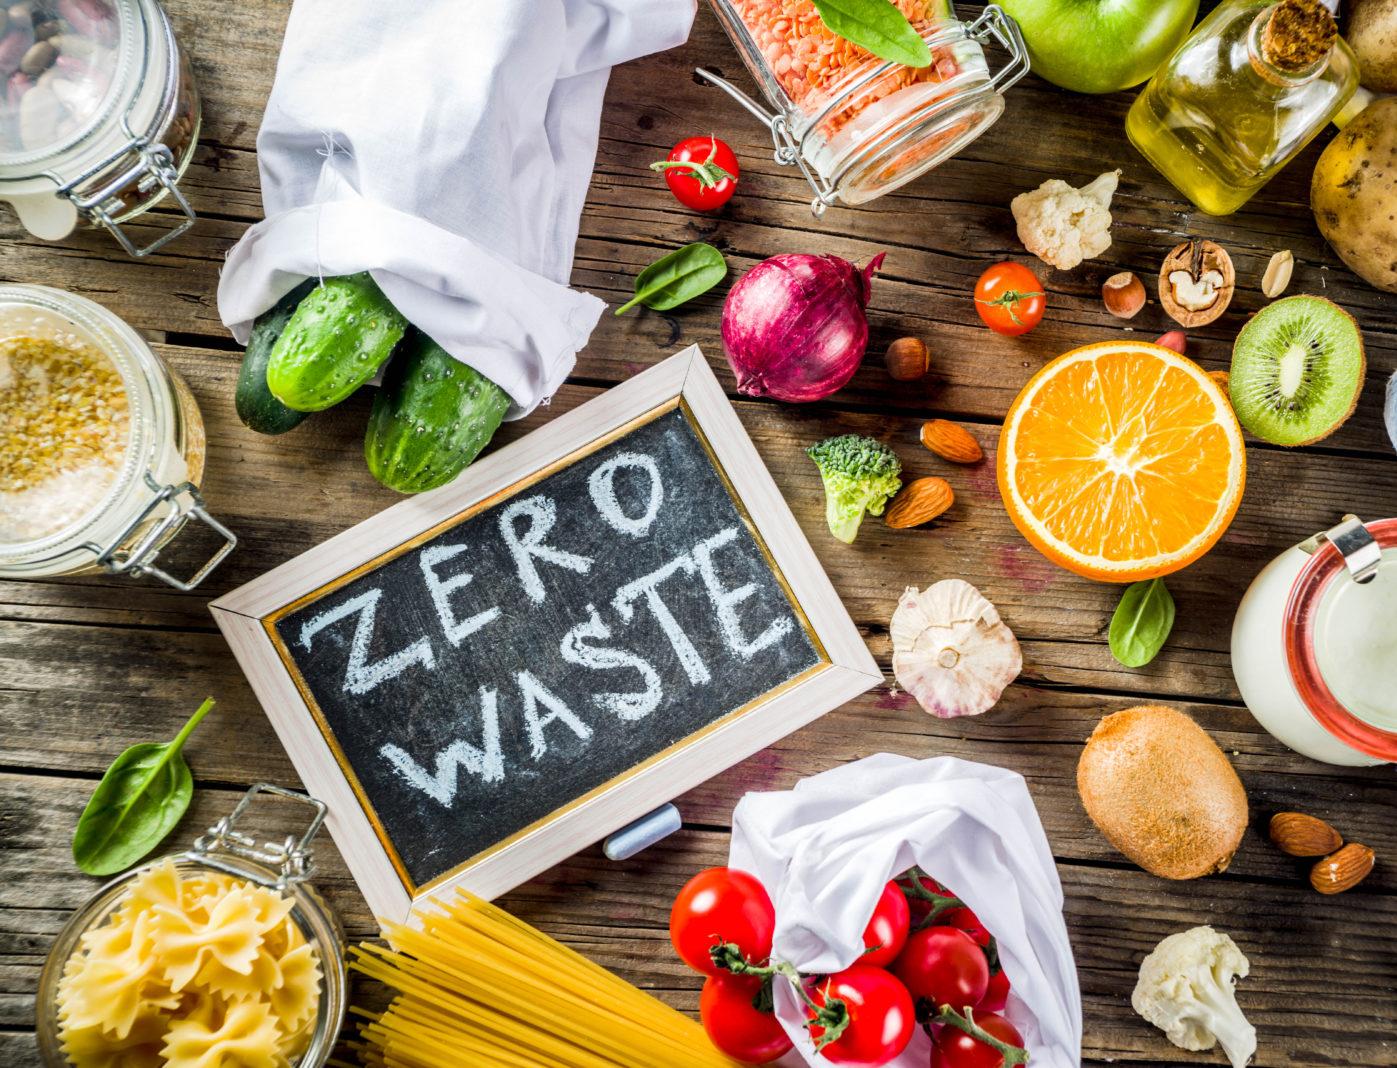 8 новостей о том, как во всем мире сокращают количество пищевых отходов